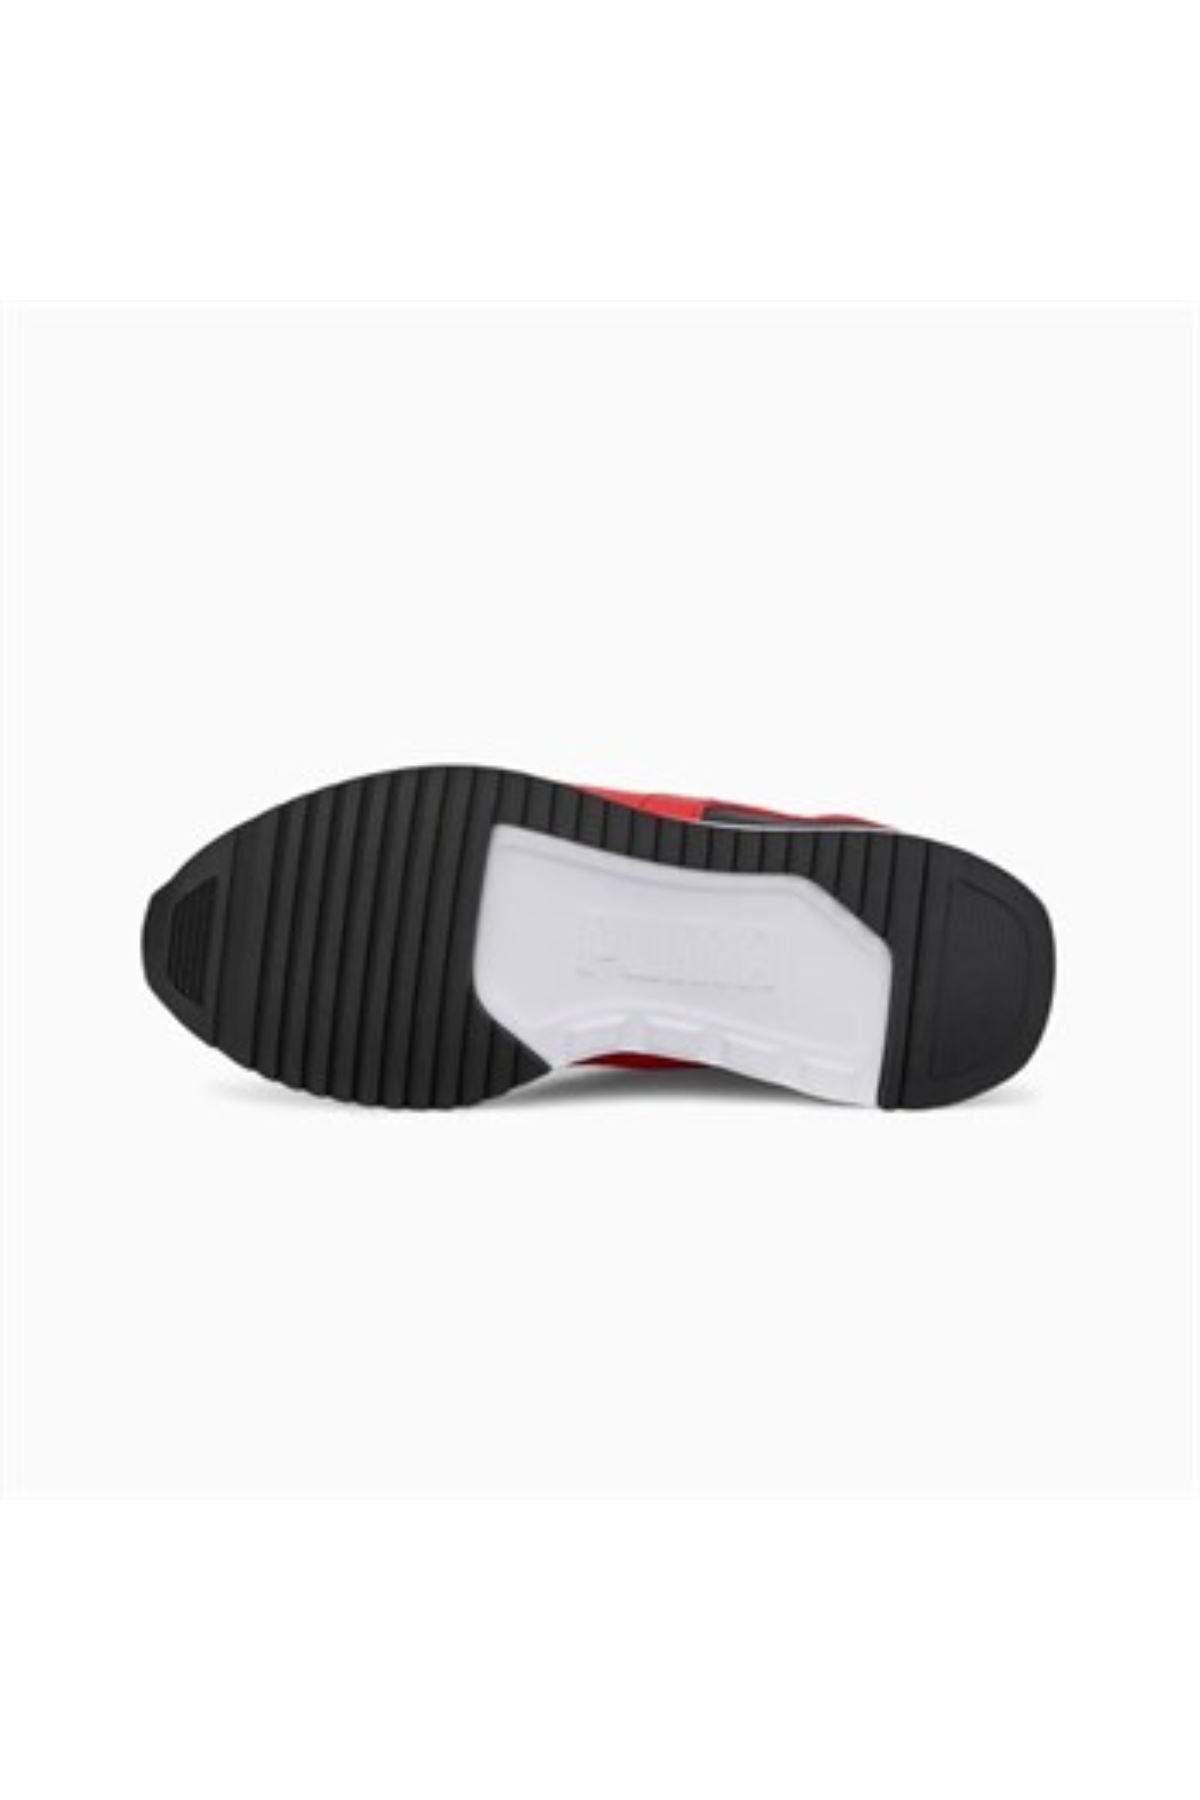 Unisex Beyaz Spor Ayakkabı - 373616-30